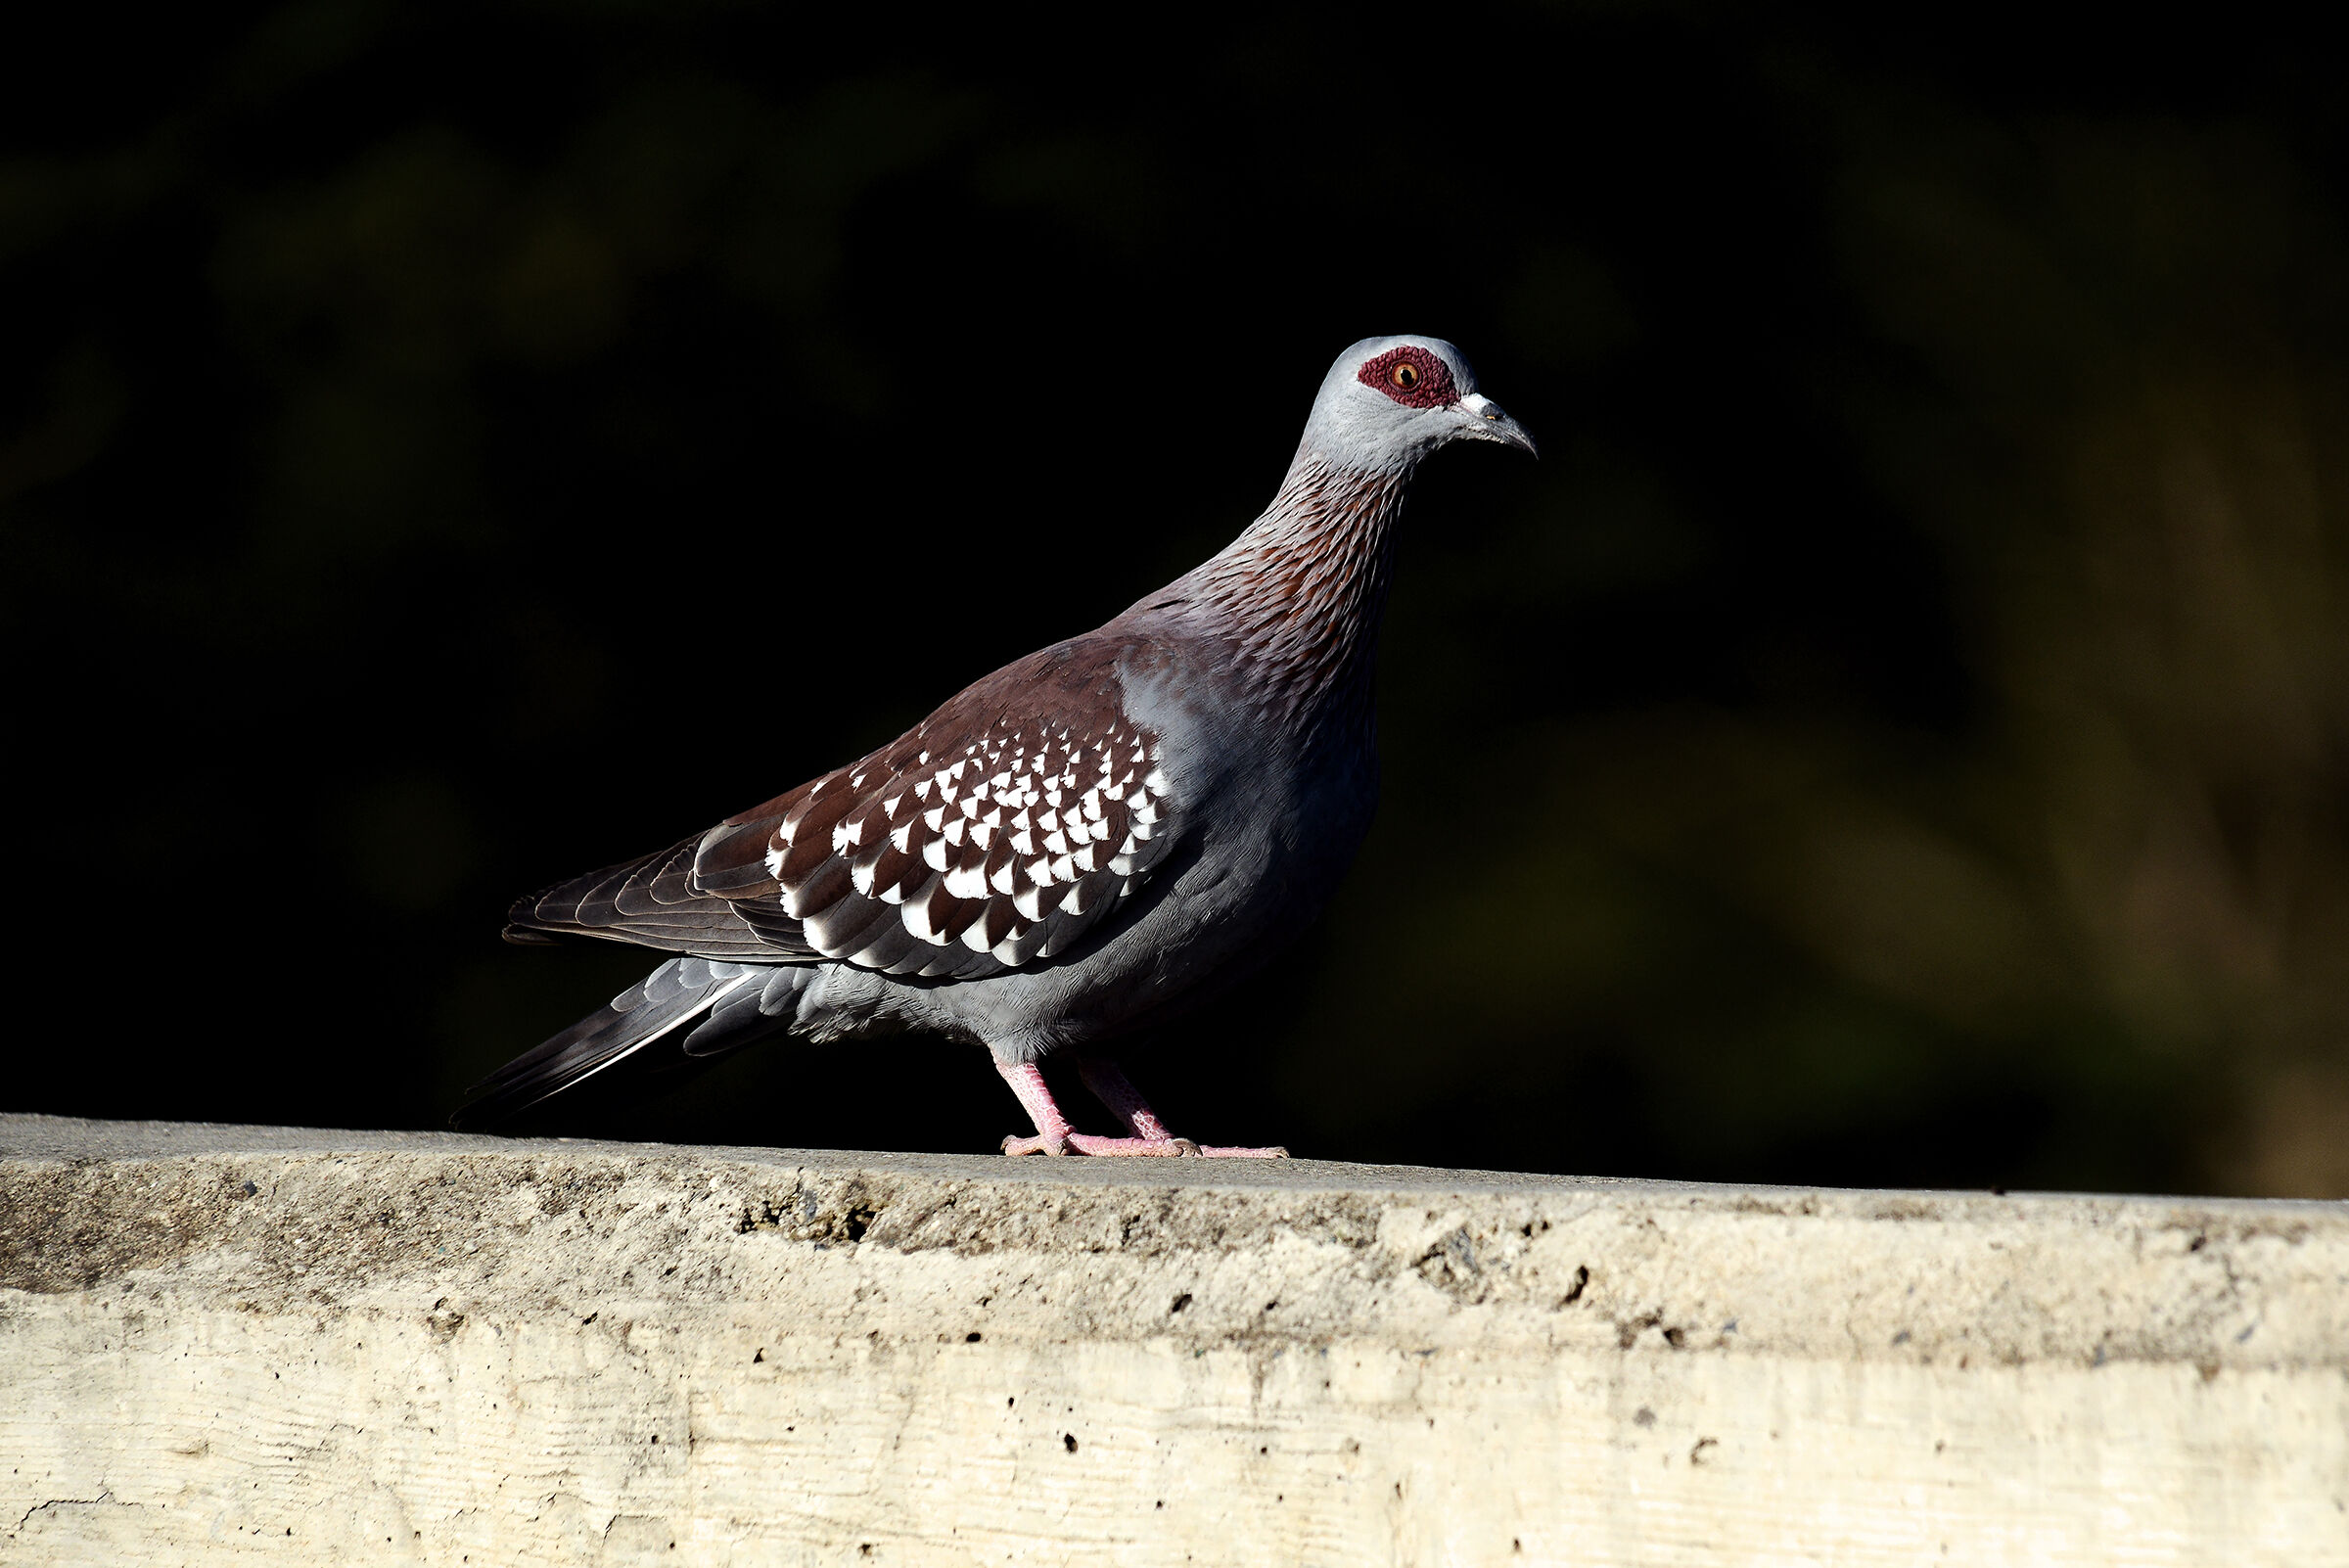 Guinea dove - Columba guinea - Pigeon=Speckled...